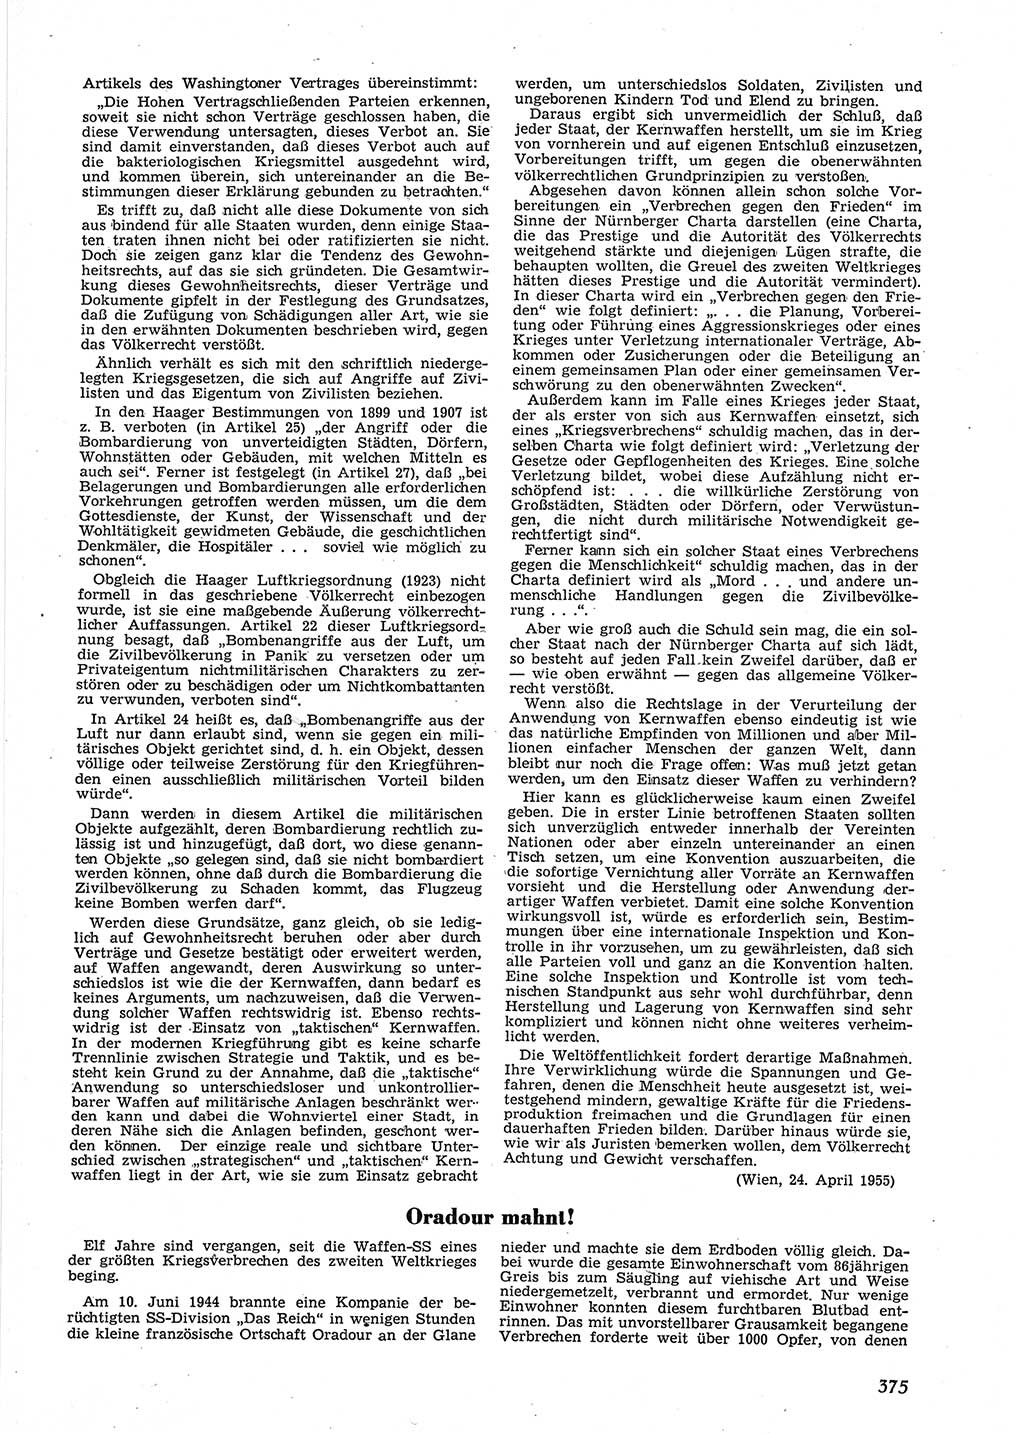 Neue Justiz (NJ), Zeitschrift für Recht und Rechtswissenschaft [Deutsche Demokratische Republik (DDR)], 9. Jahrgang 1955, Seite 375 (NJ DDR 1955, S. 375)